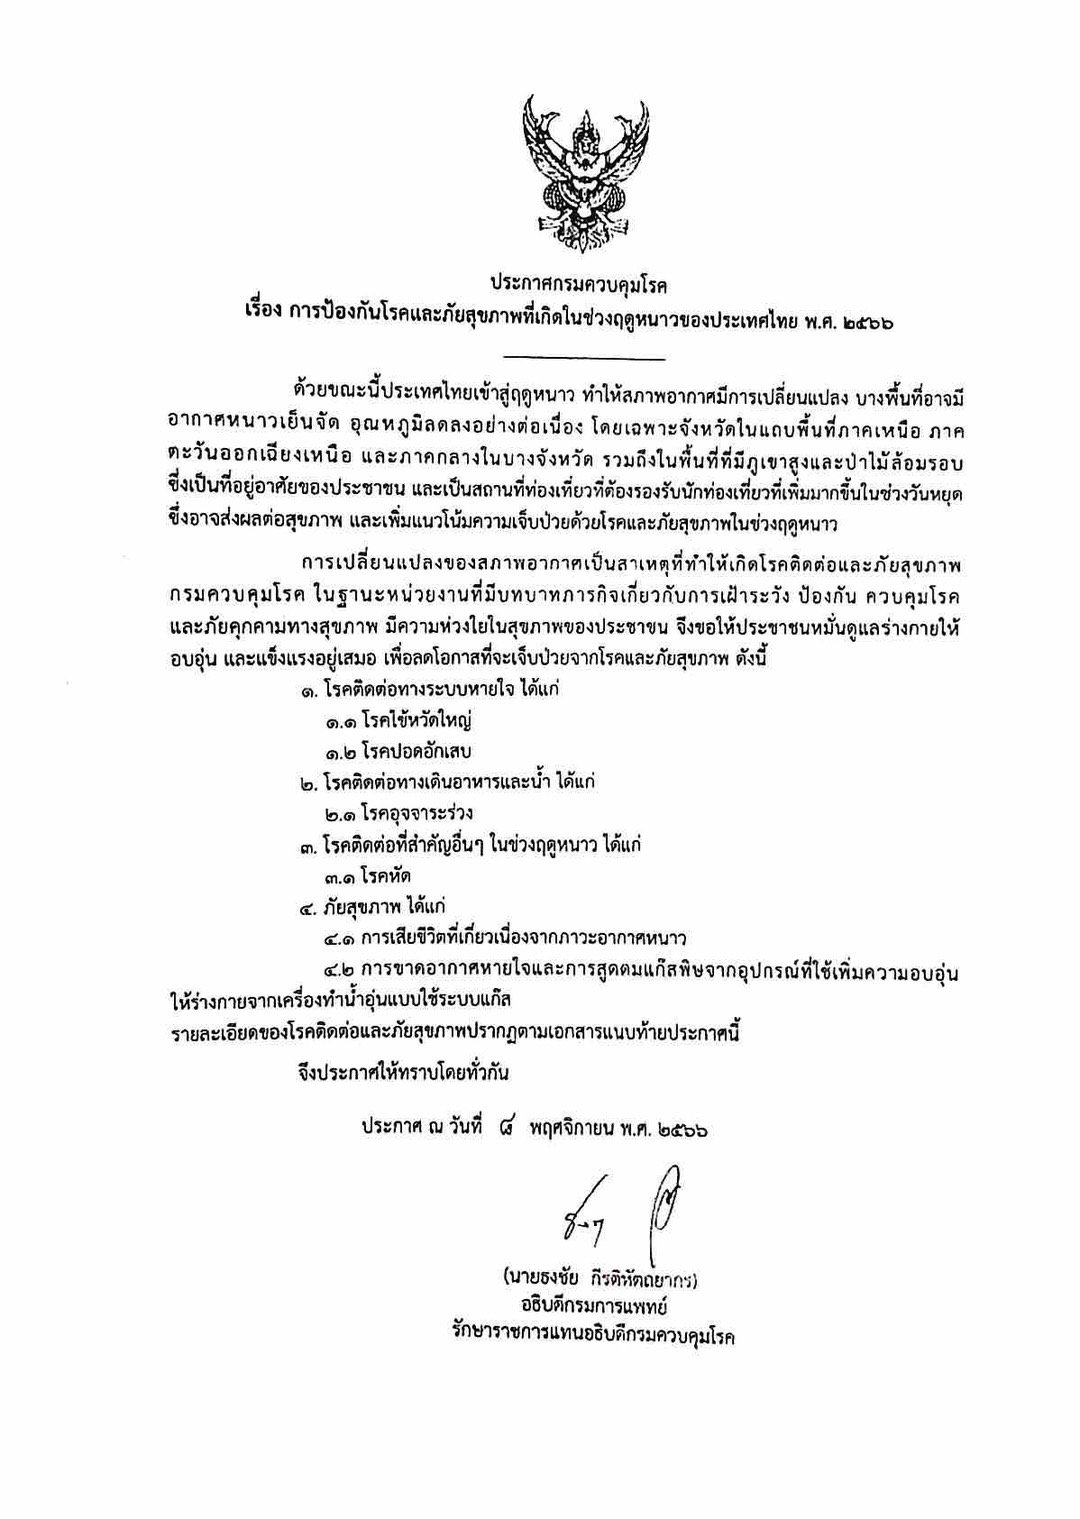 ประชาสัมพันธ์ข้อมูลข่าวสาร "การป้องกันโรคติดต่อและภัยสุขภาพที่เกิดในช่วงฤดูหนาวของประเทศไทย พ.ศ. 2566"